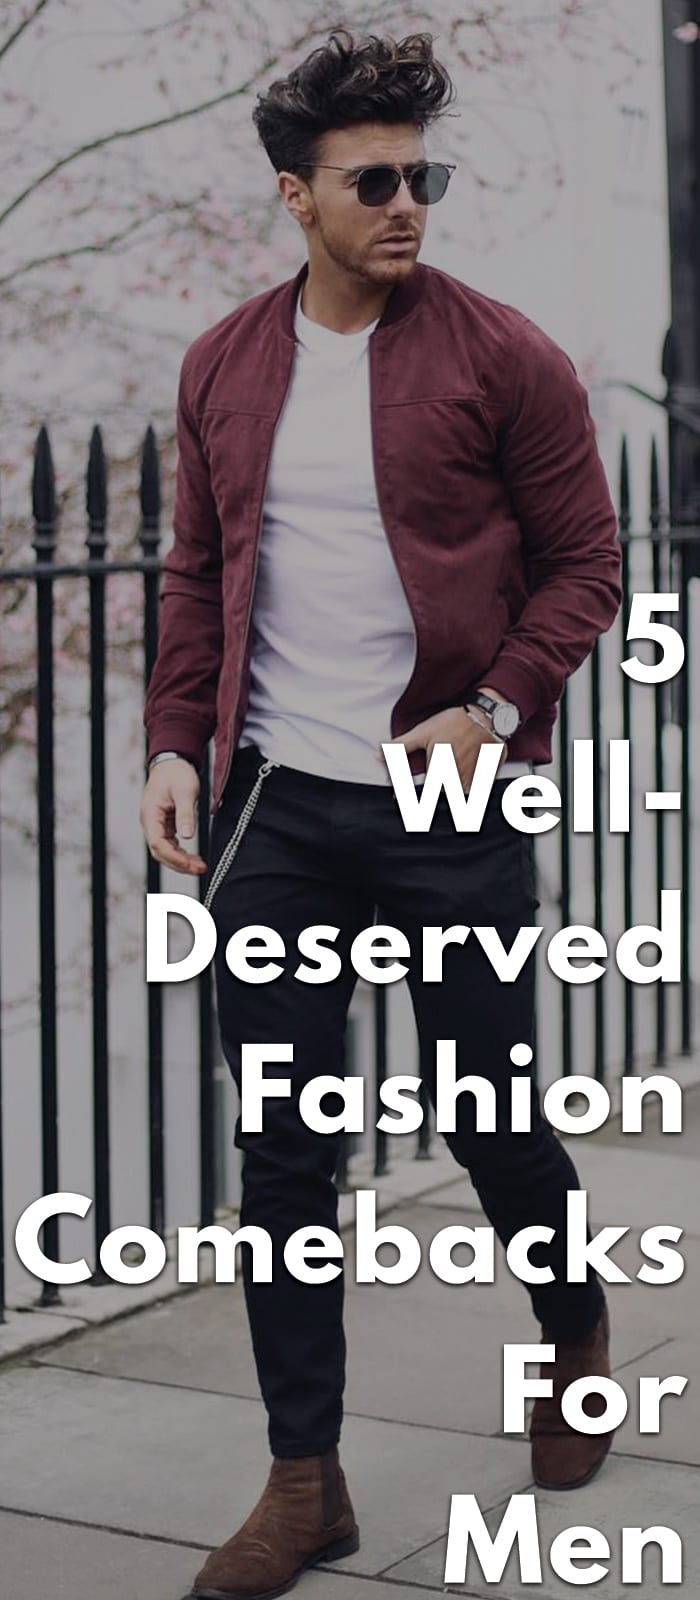 5-Well-Deserved-Fashion-Comebacks-For-Men...